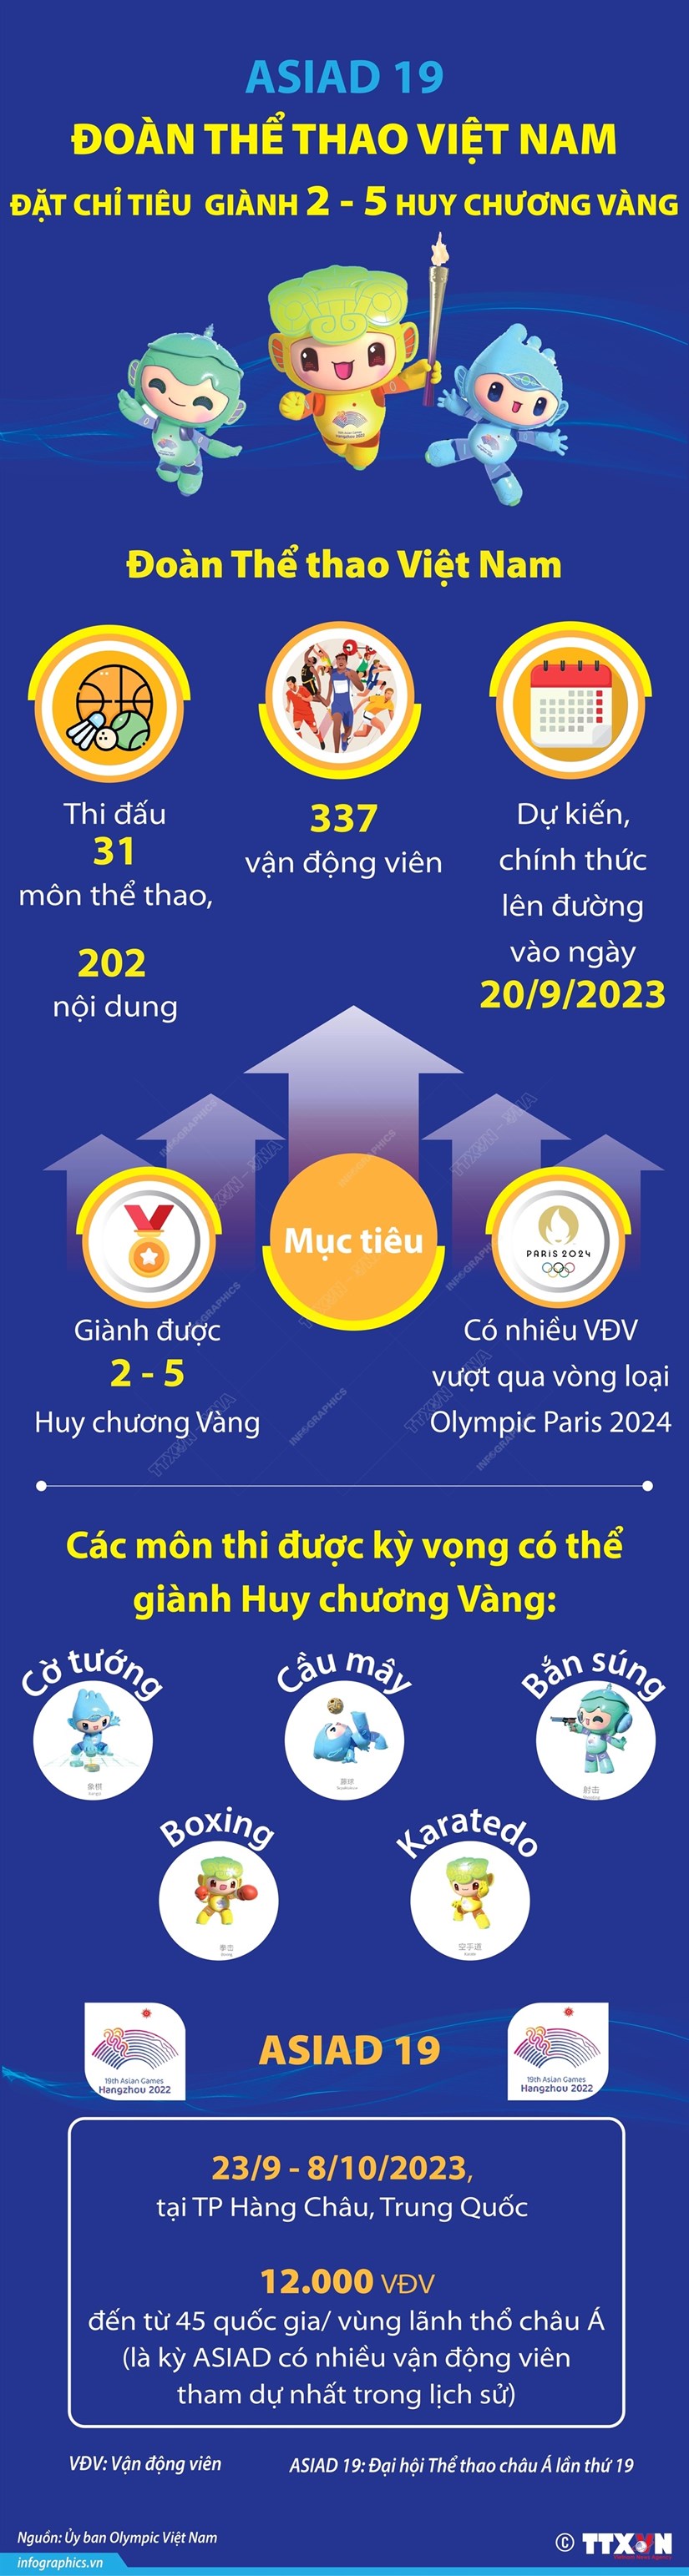 [Infographic] Việt Nam đặt chỉ tiêu giành 2-5 huy chương vàng tại ASIAD 19